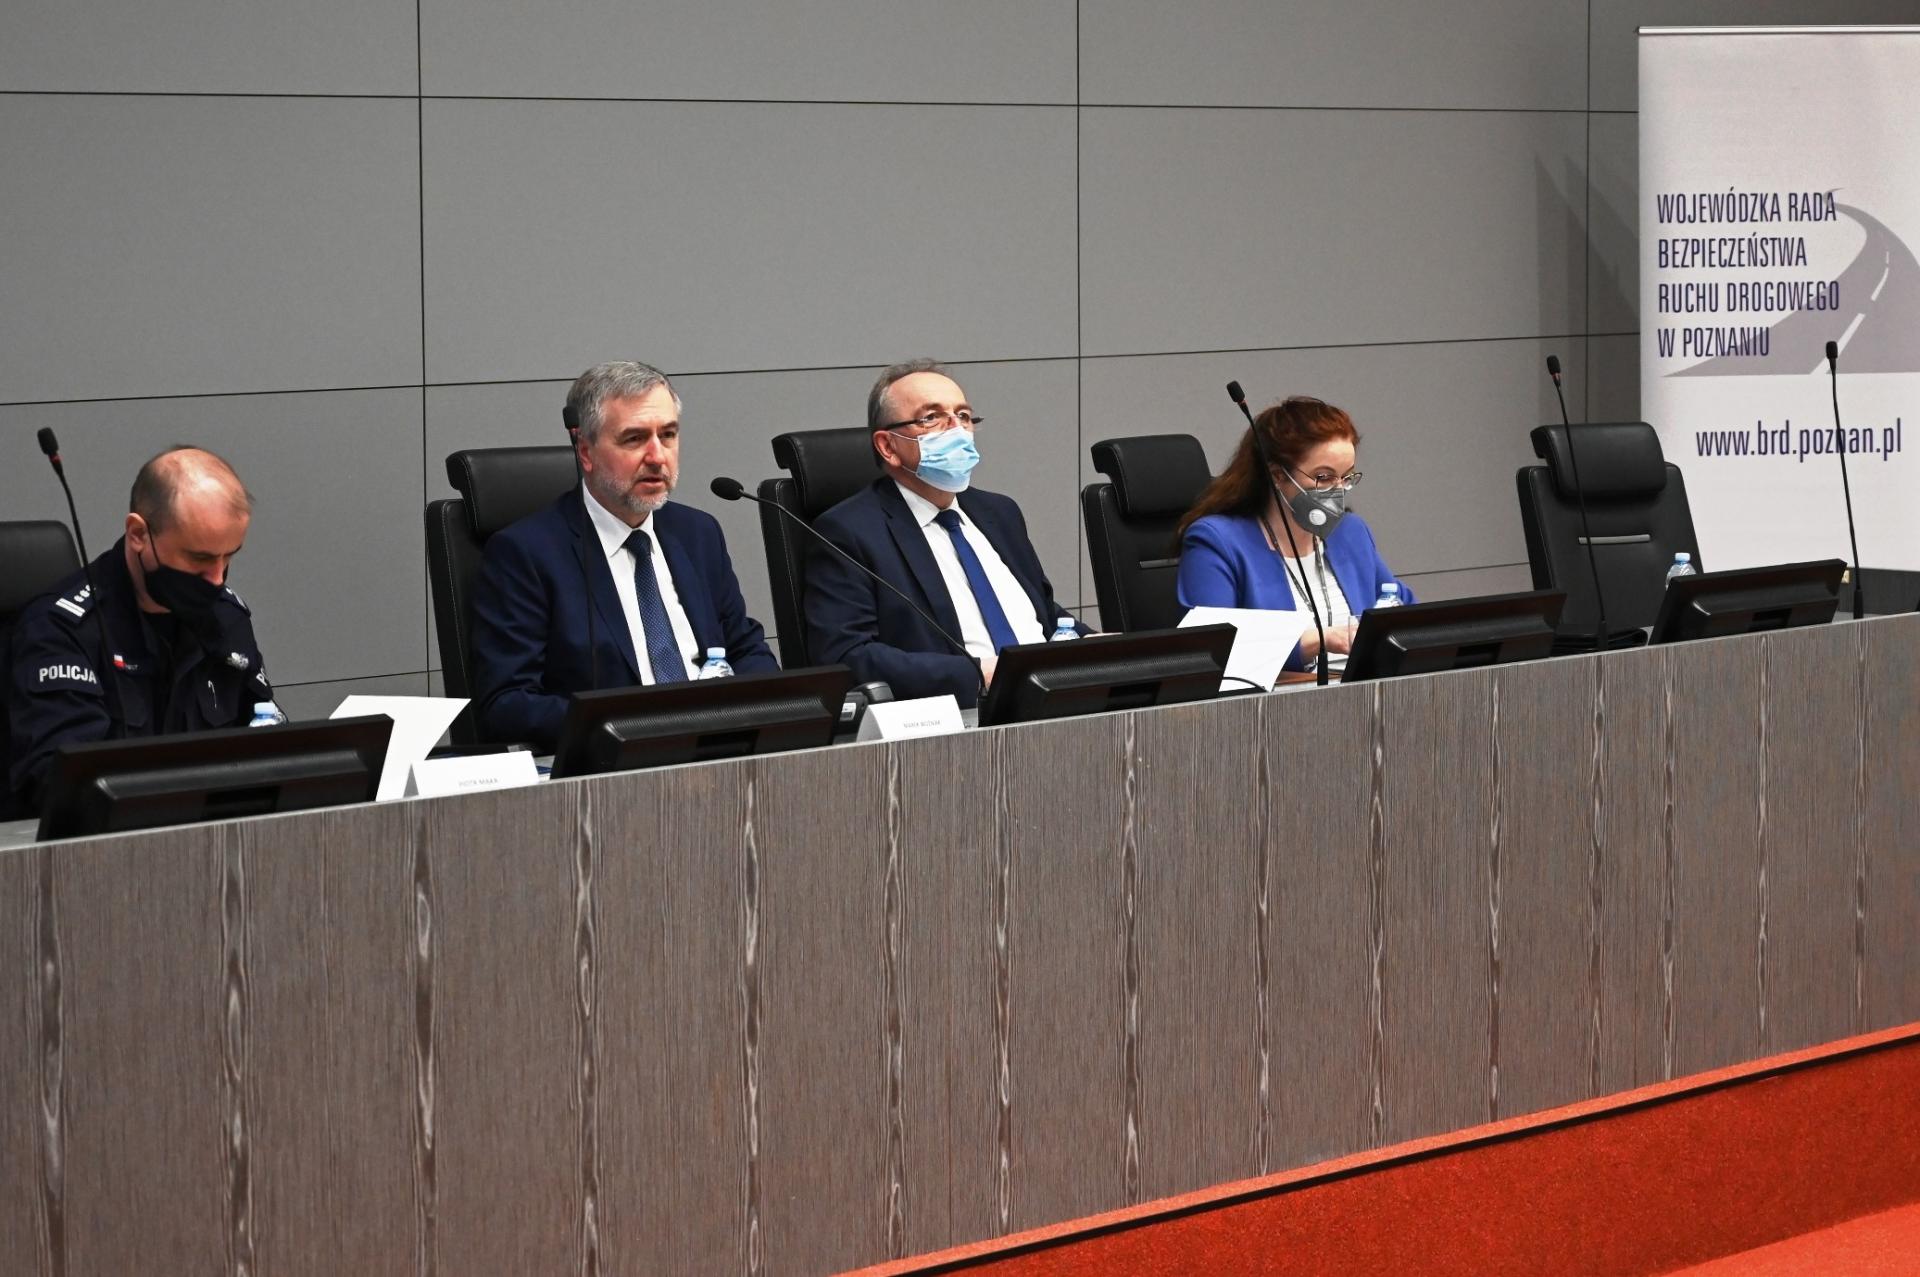 Posiedzenie Wojewódzkiej Rady Bezpieczeństwa Ruchu Drogowego w Poznaniu - zobacz więcej